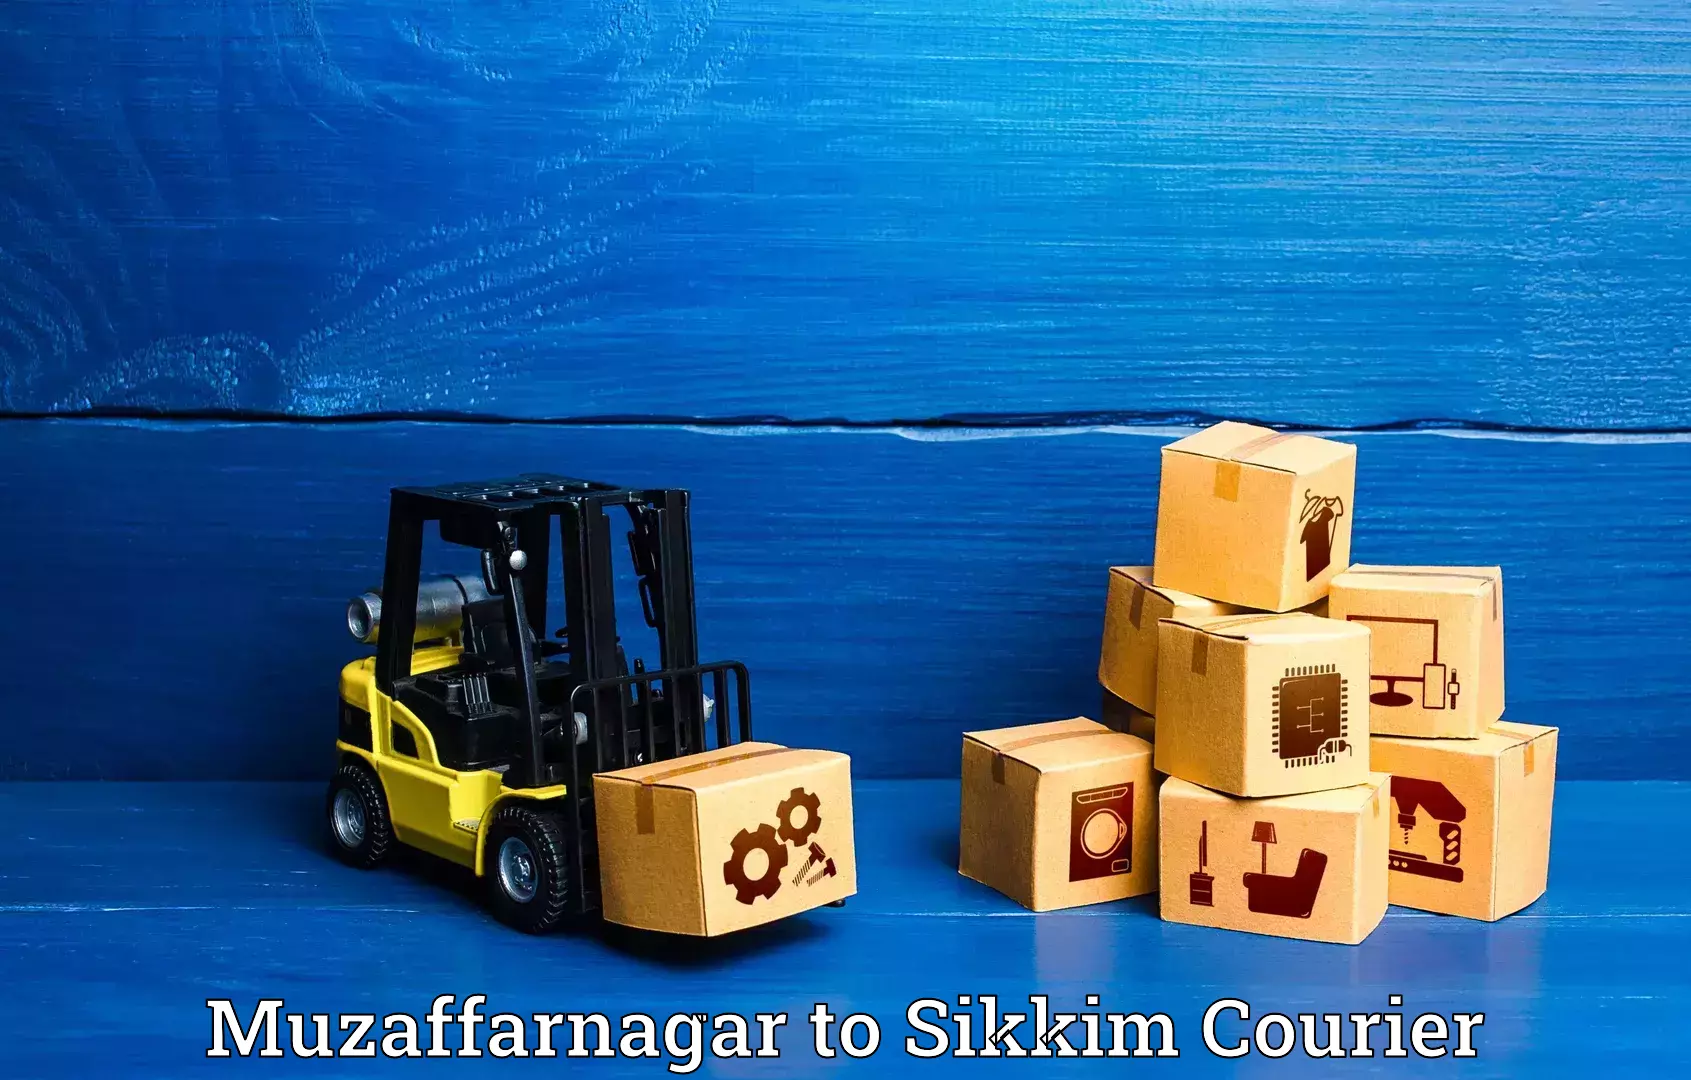 Luggage shipment specialists Muzaffarnagar to West Sikkim